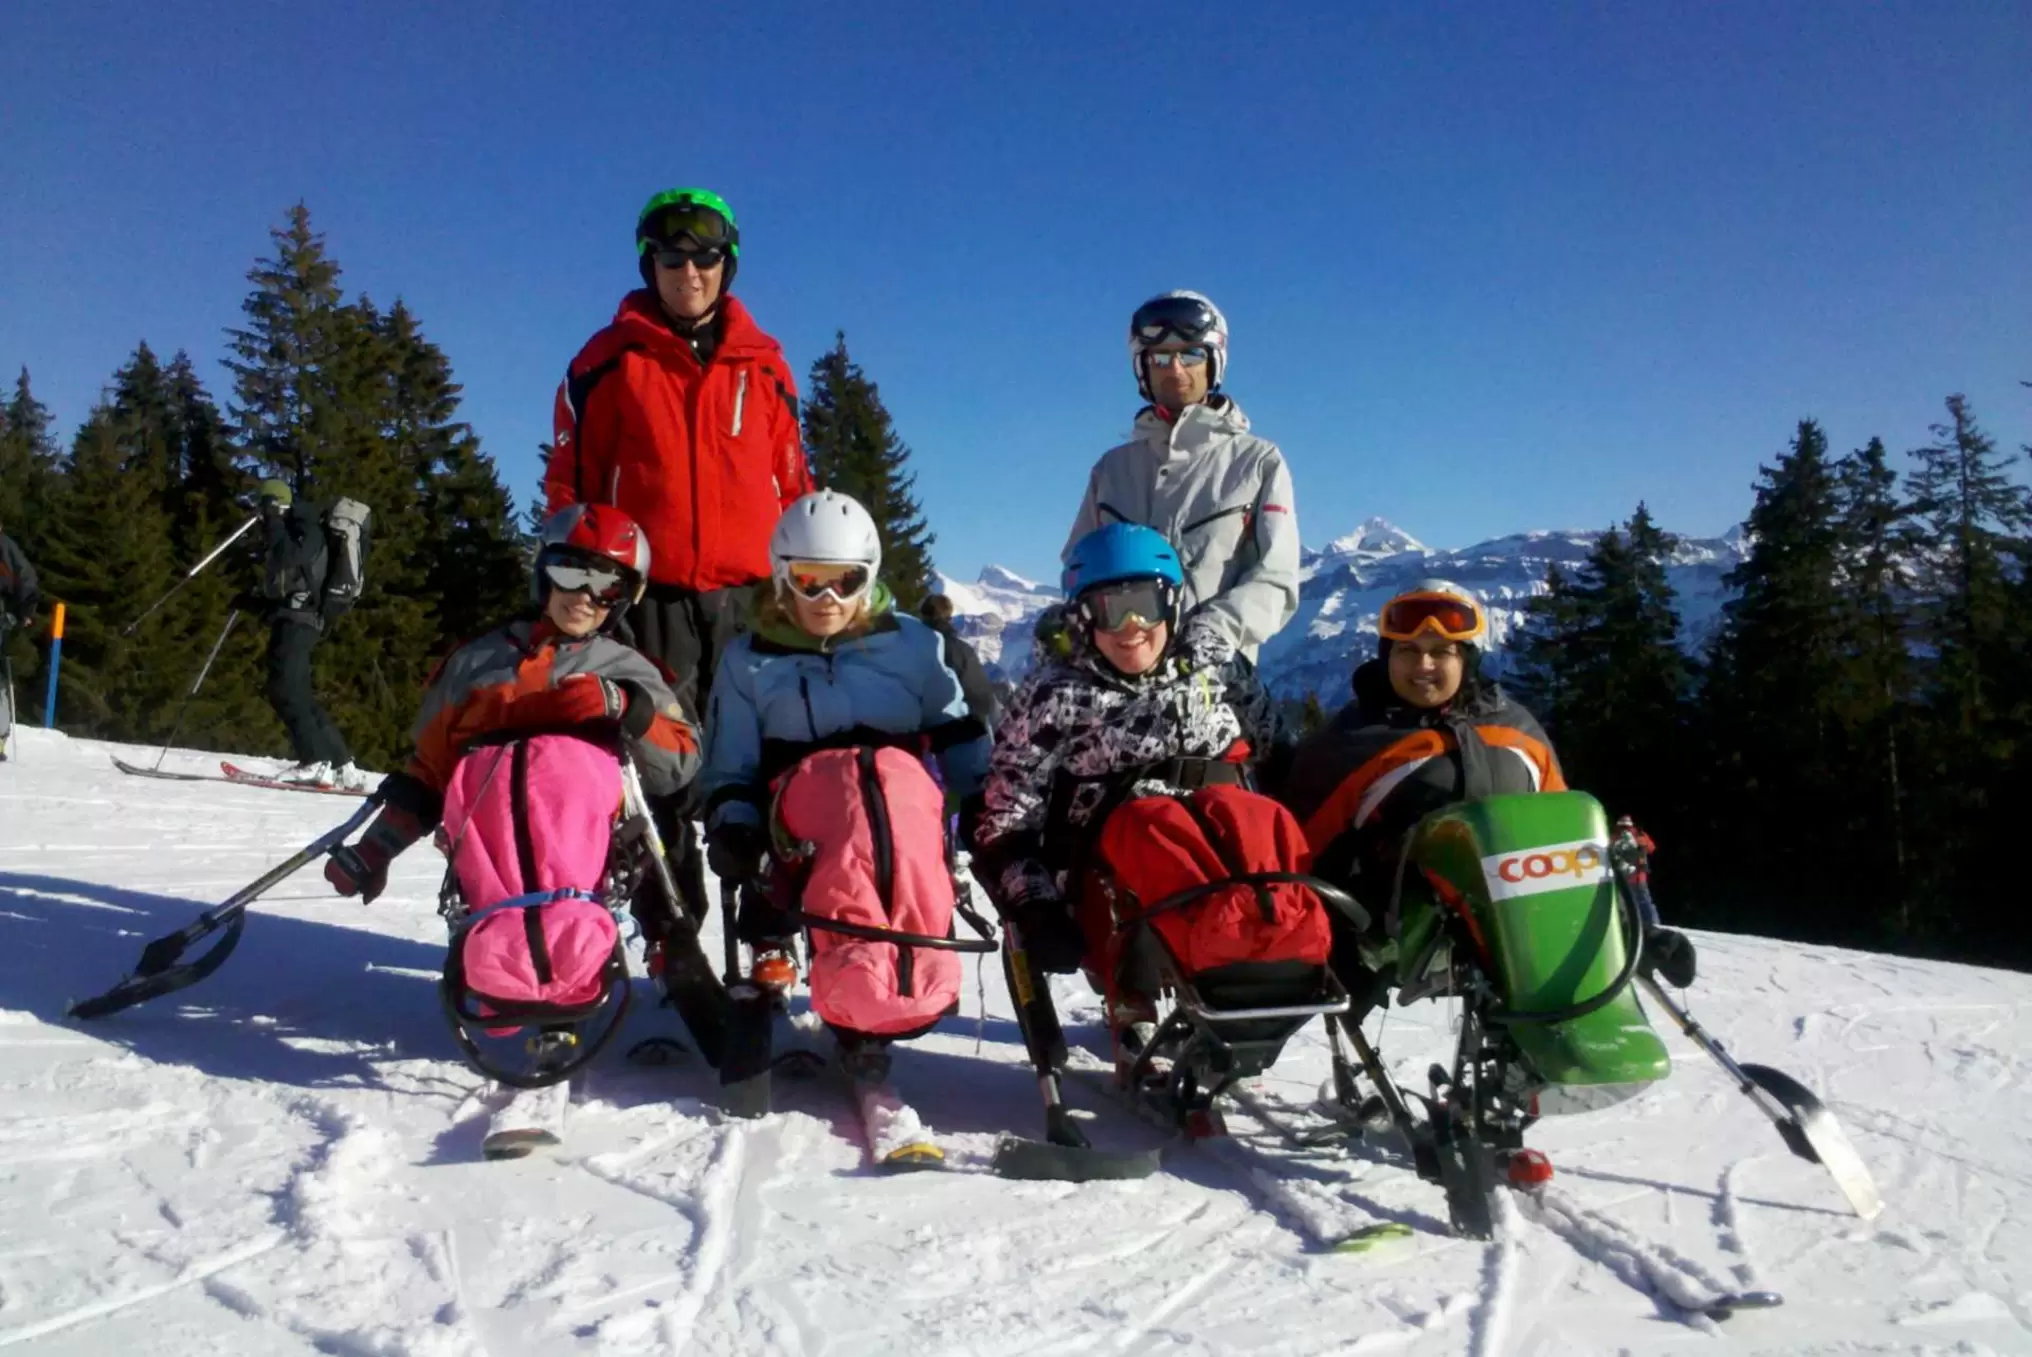 Jugendliche mit Talent werden in diversen Sportarten gefördert, hier beim Skilaufen